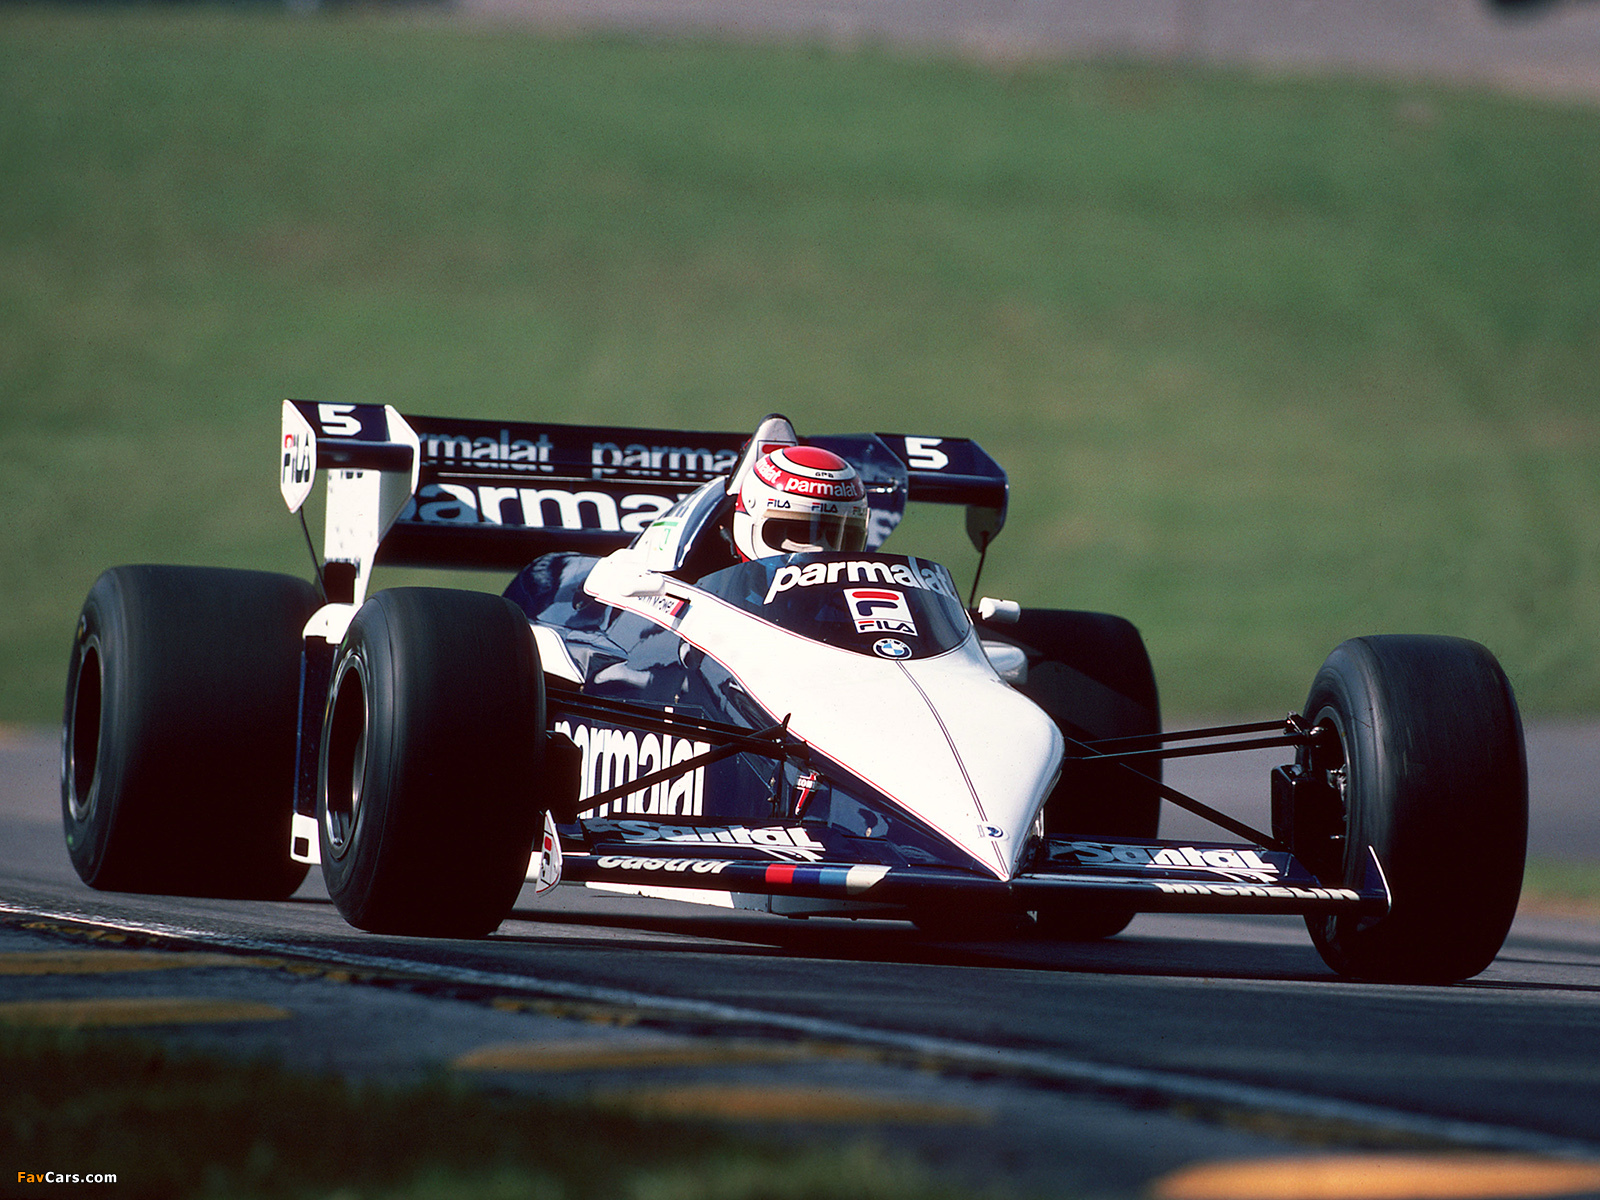 Nelson Piquet, Huyền thoại lái BT52 vô địch giải đua Công thức F1 thế giới năm 1983